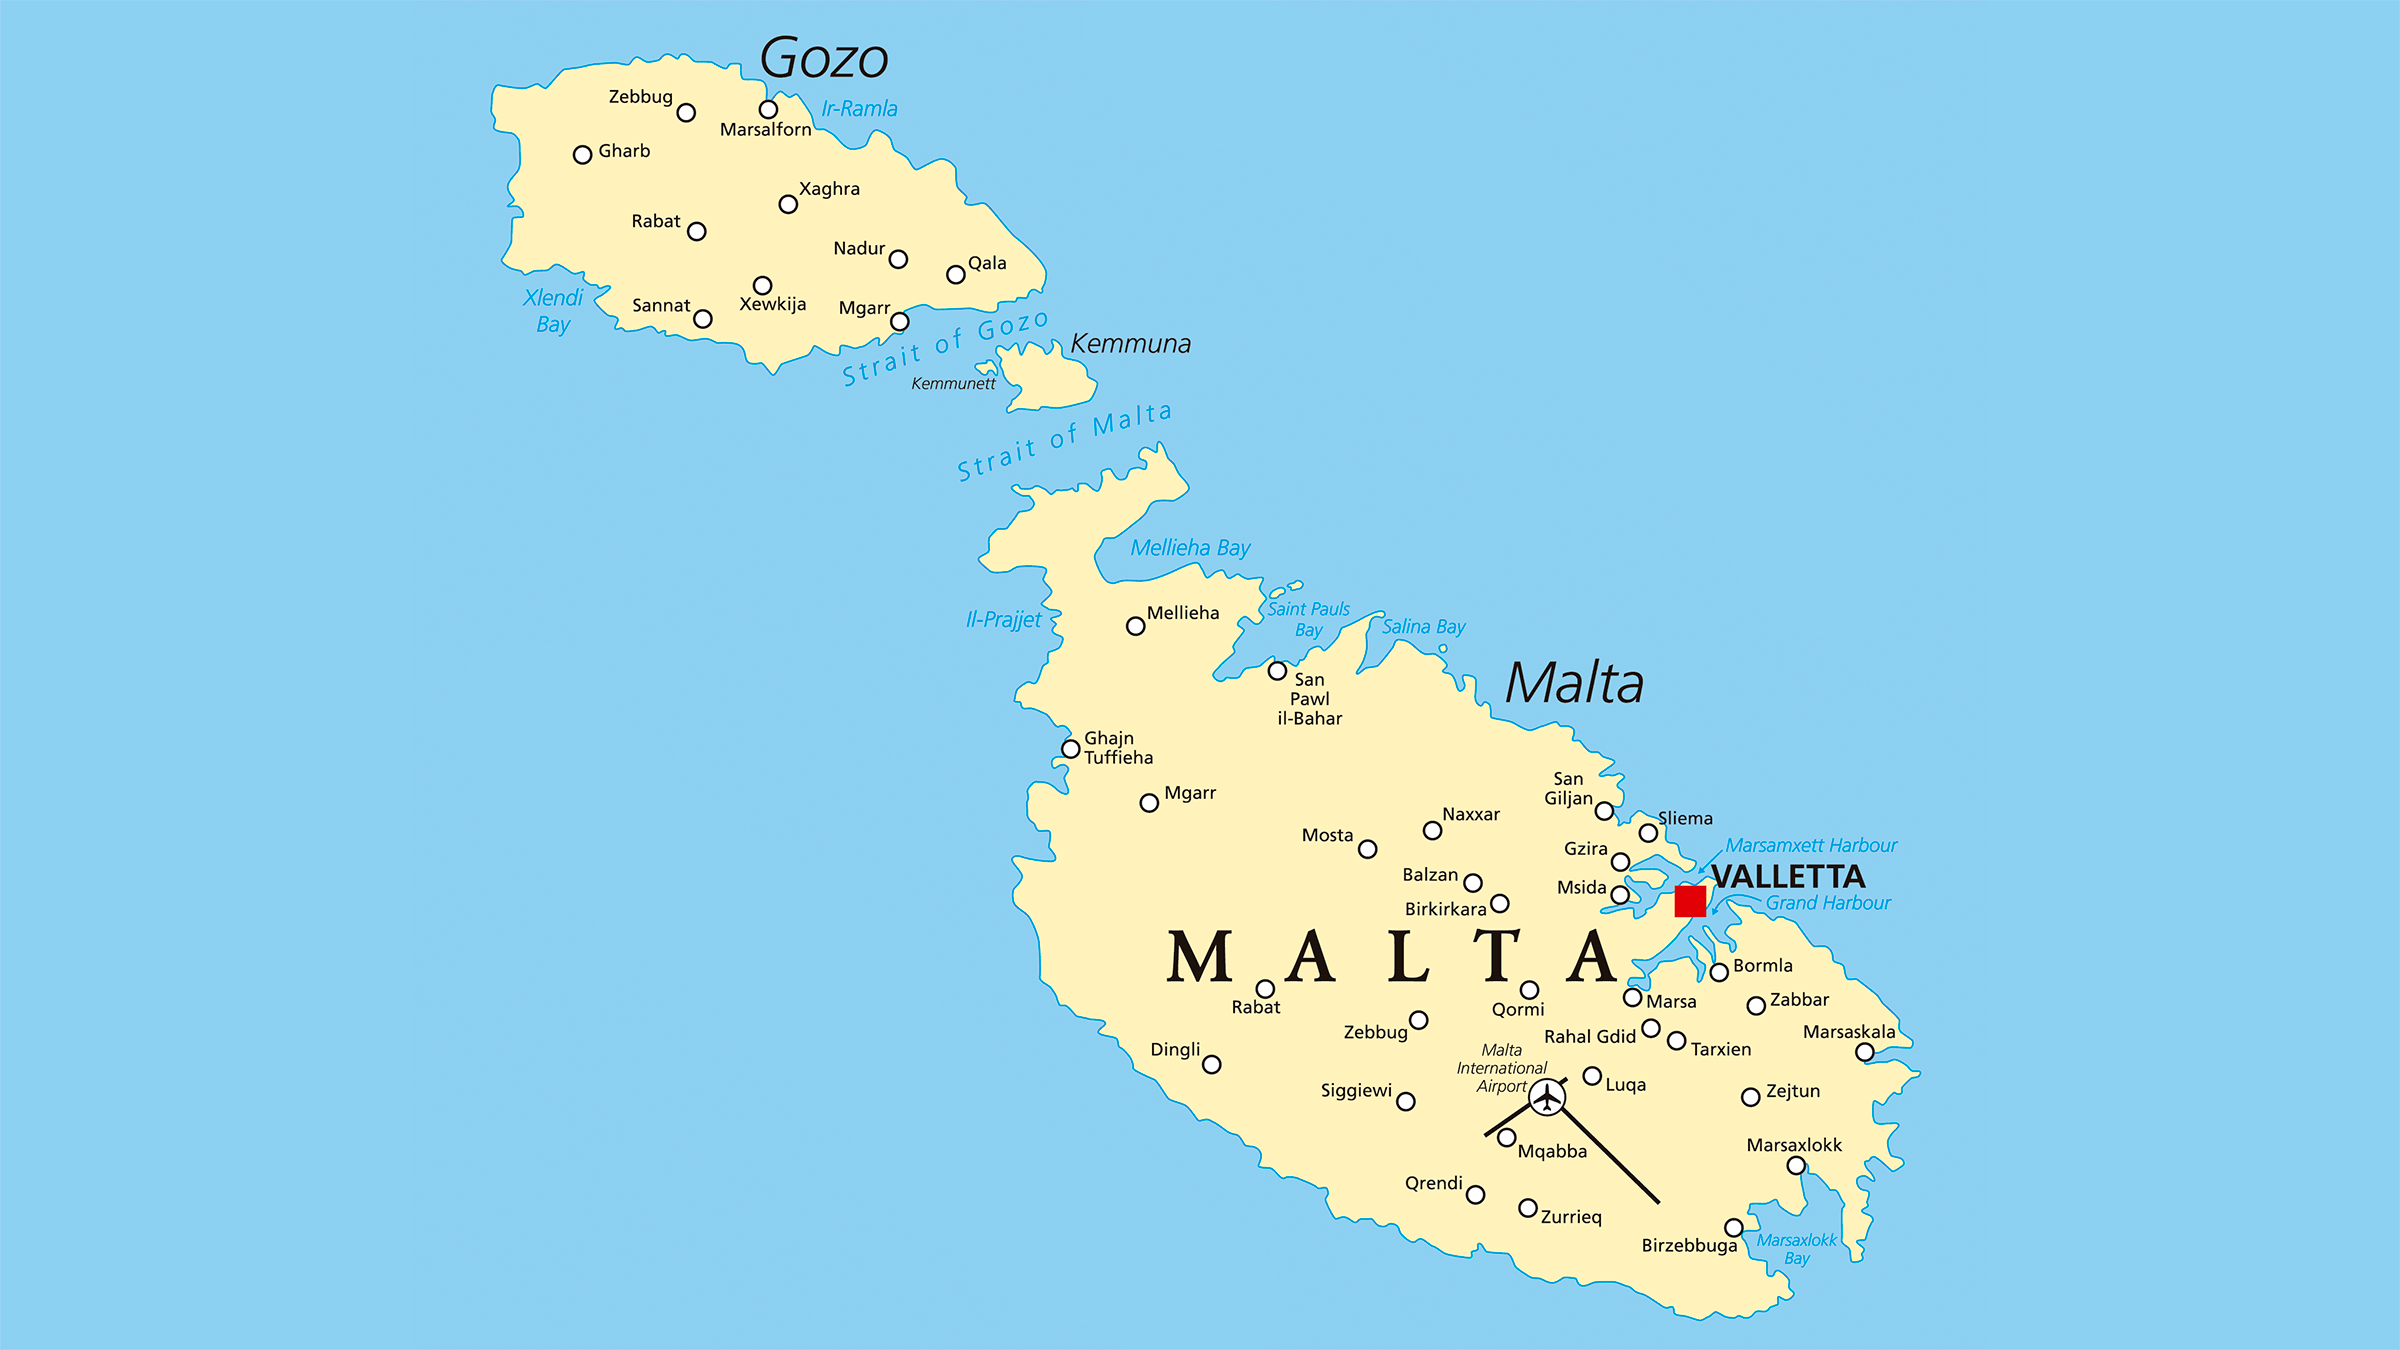 malta mapa Mapa politico de Malta malta mapa